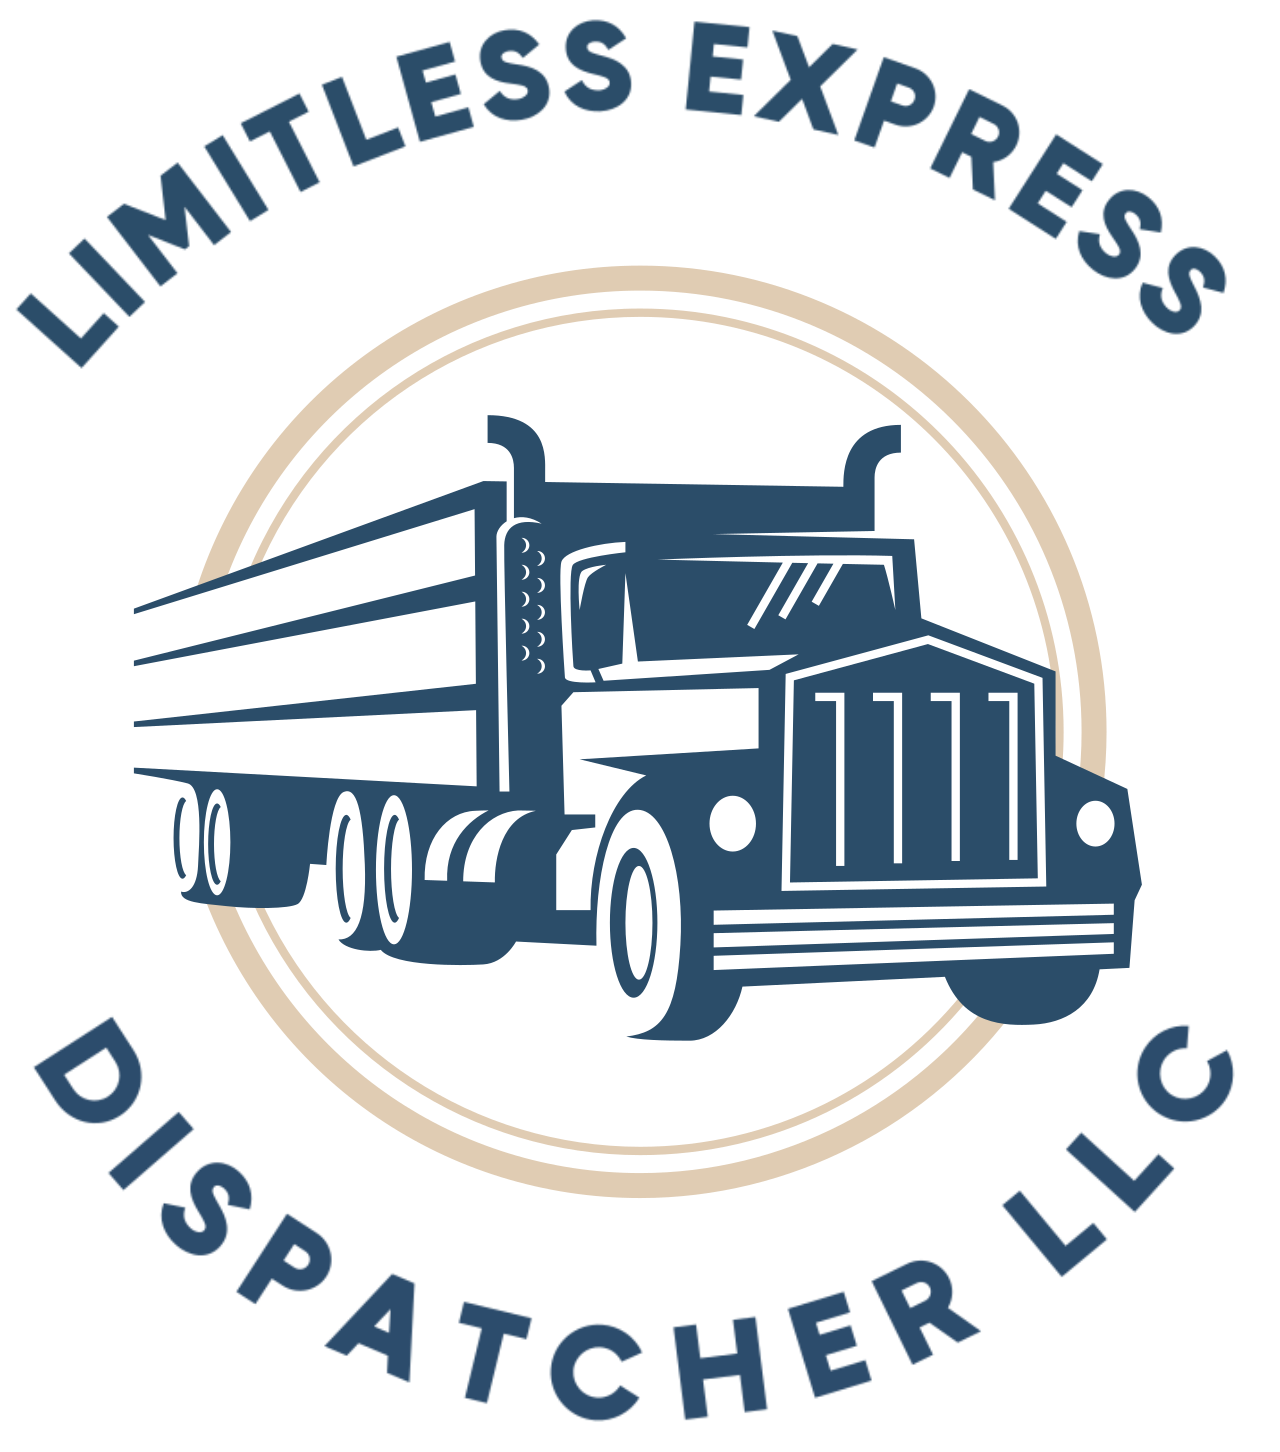 Limitless express 's logo